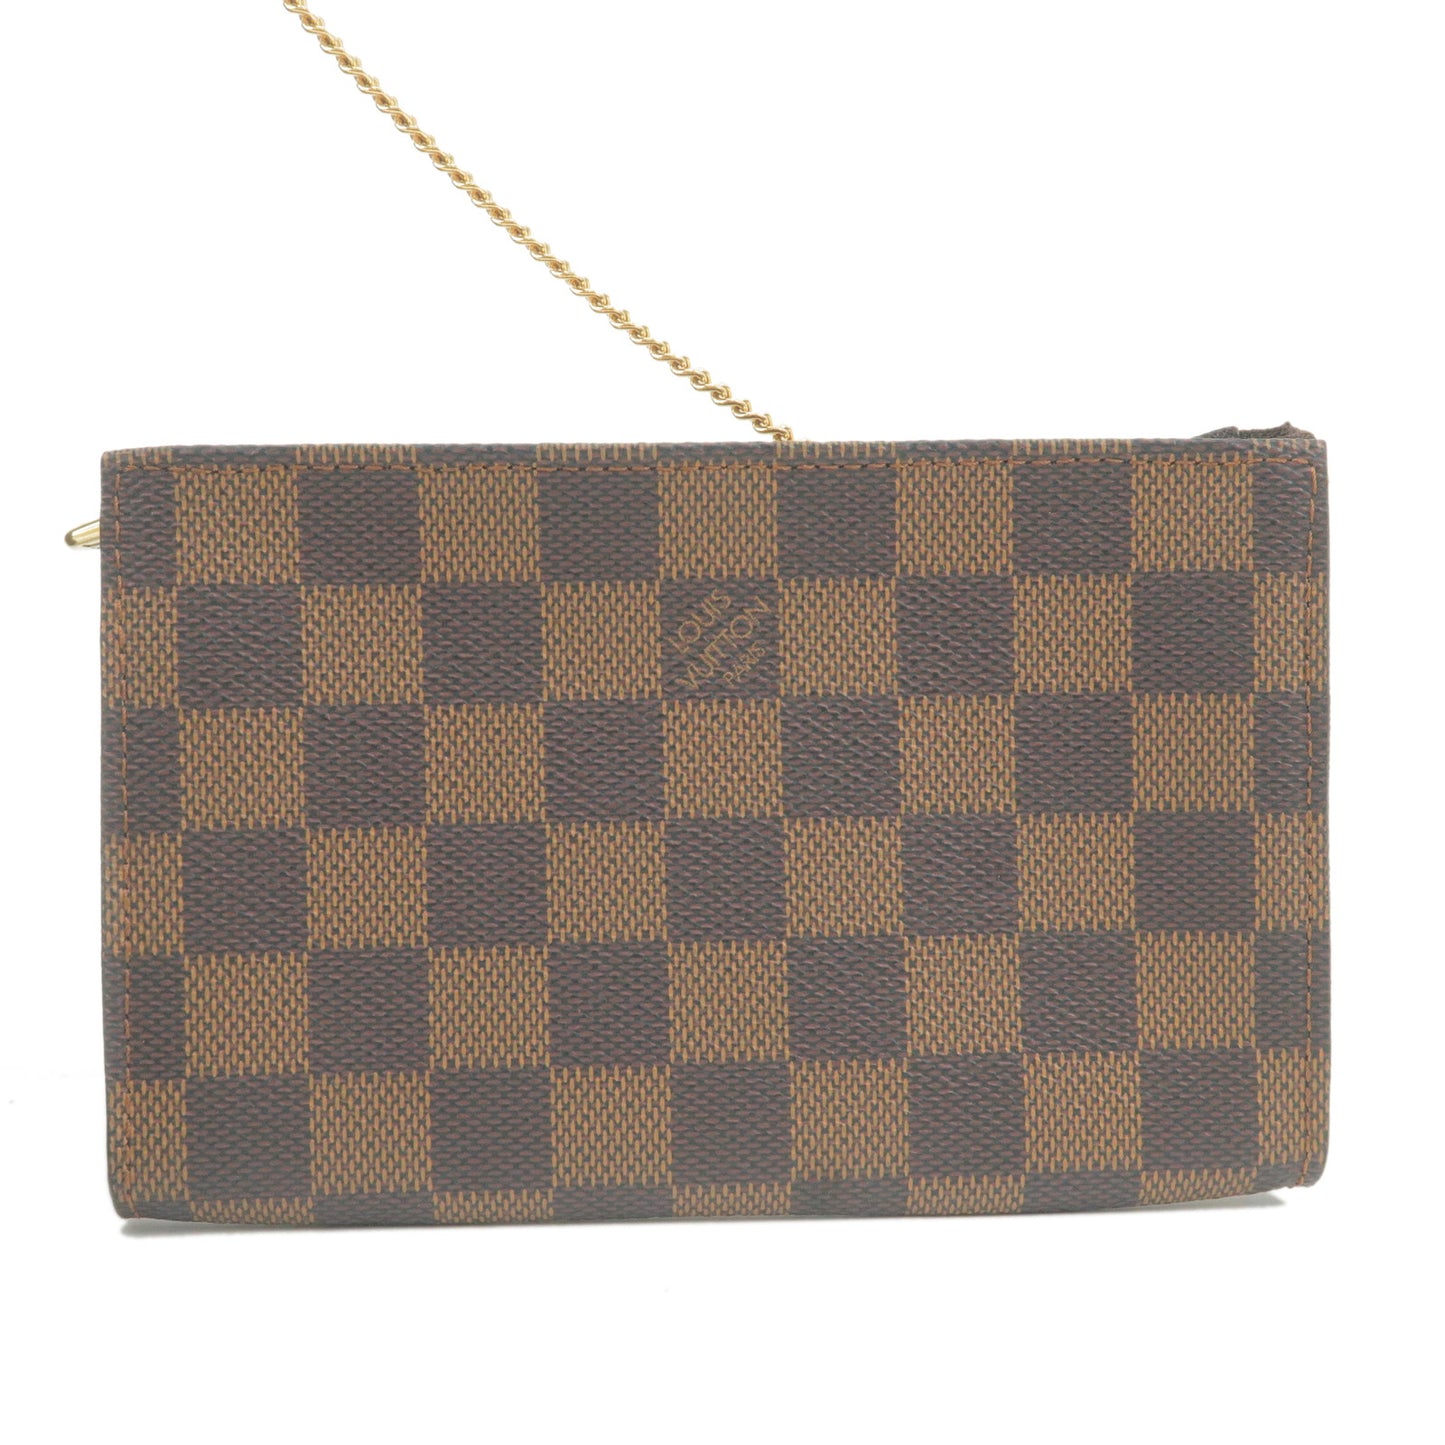 Louis Vuitton Damier Ebene Marais Tote Bag with Pouch N42240